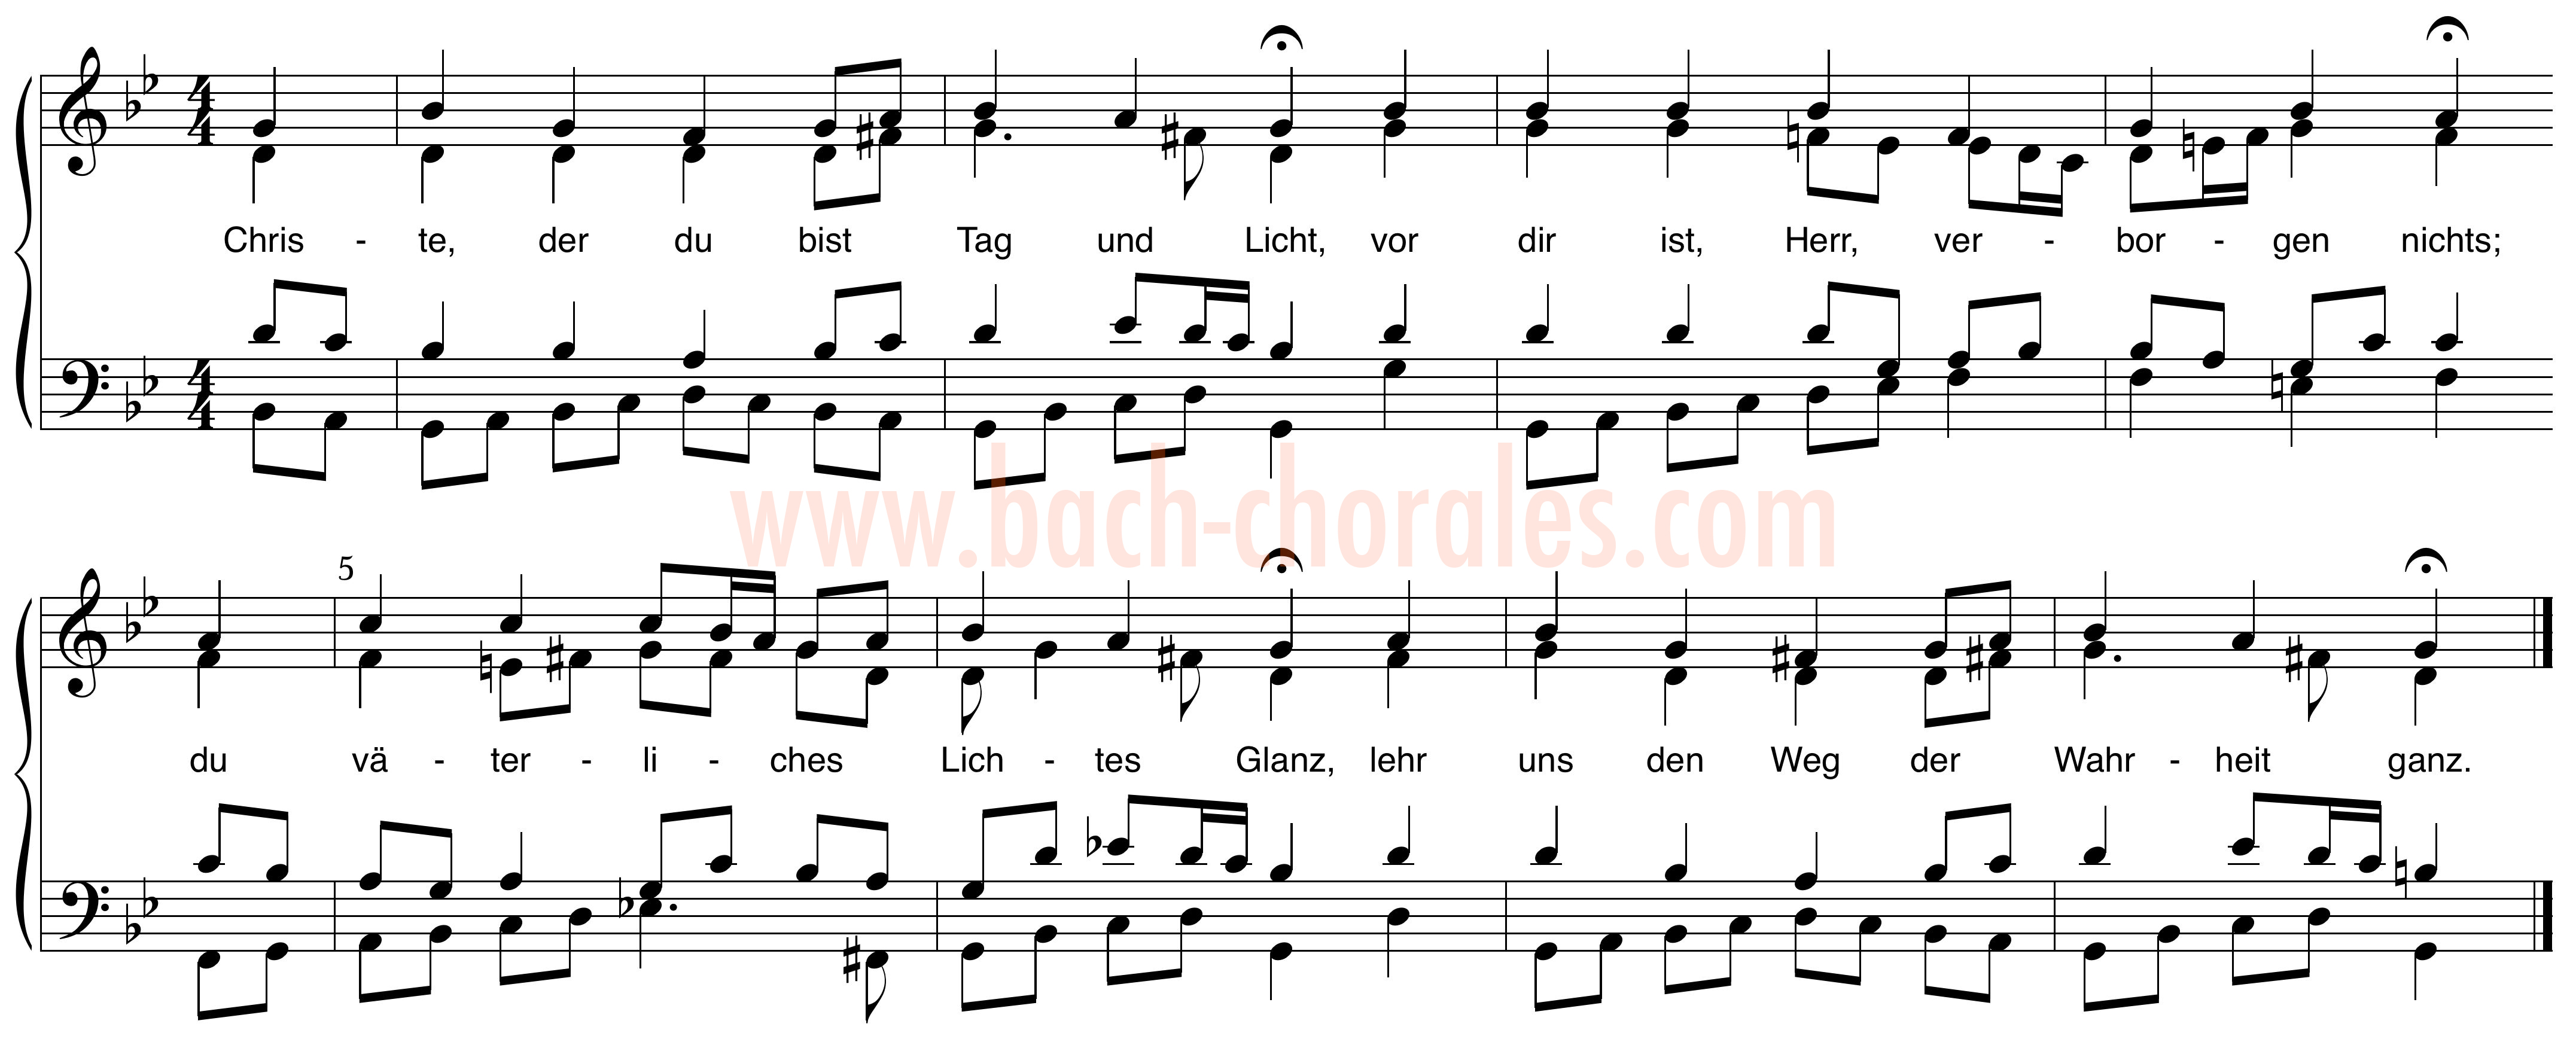 notenbeeld BWV 274 op https://www.bach-chorales.com/